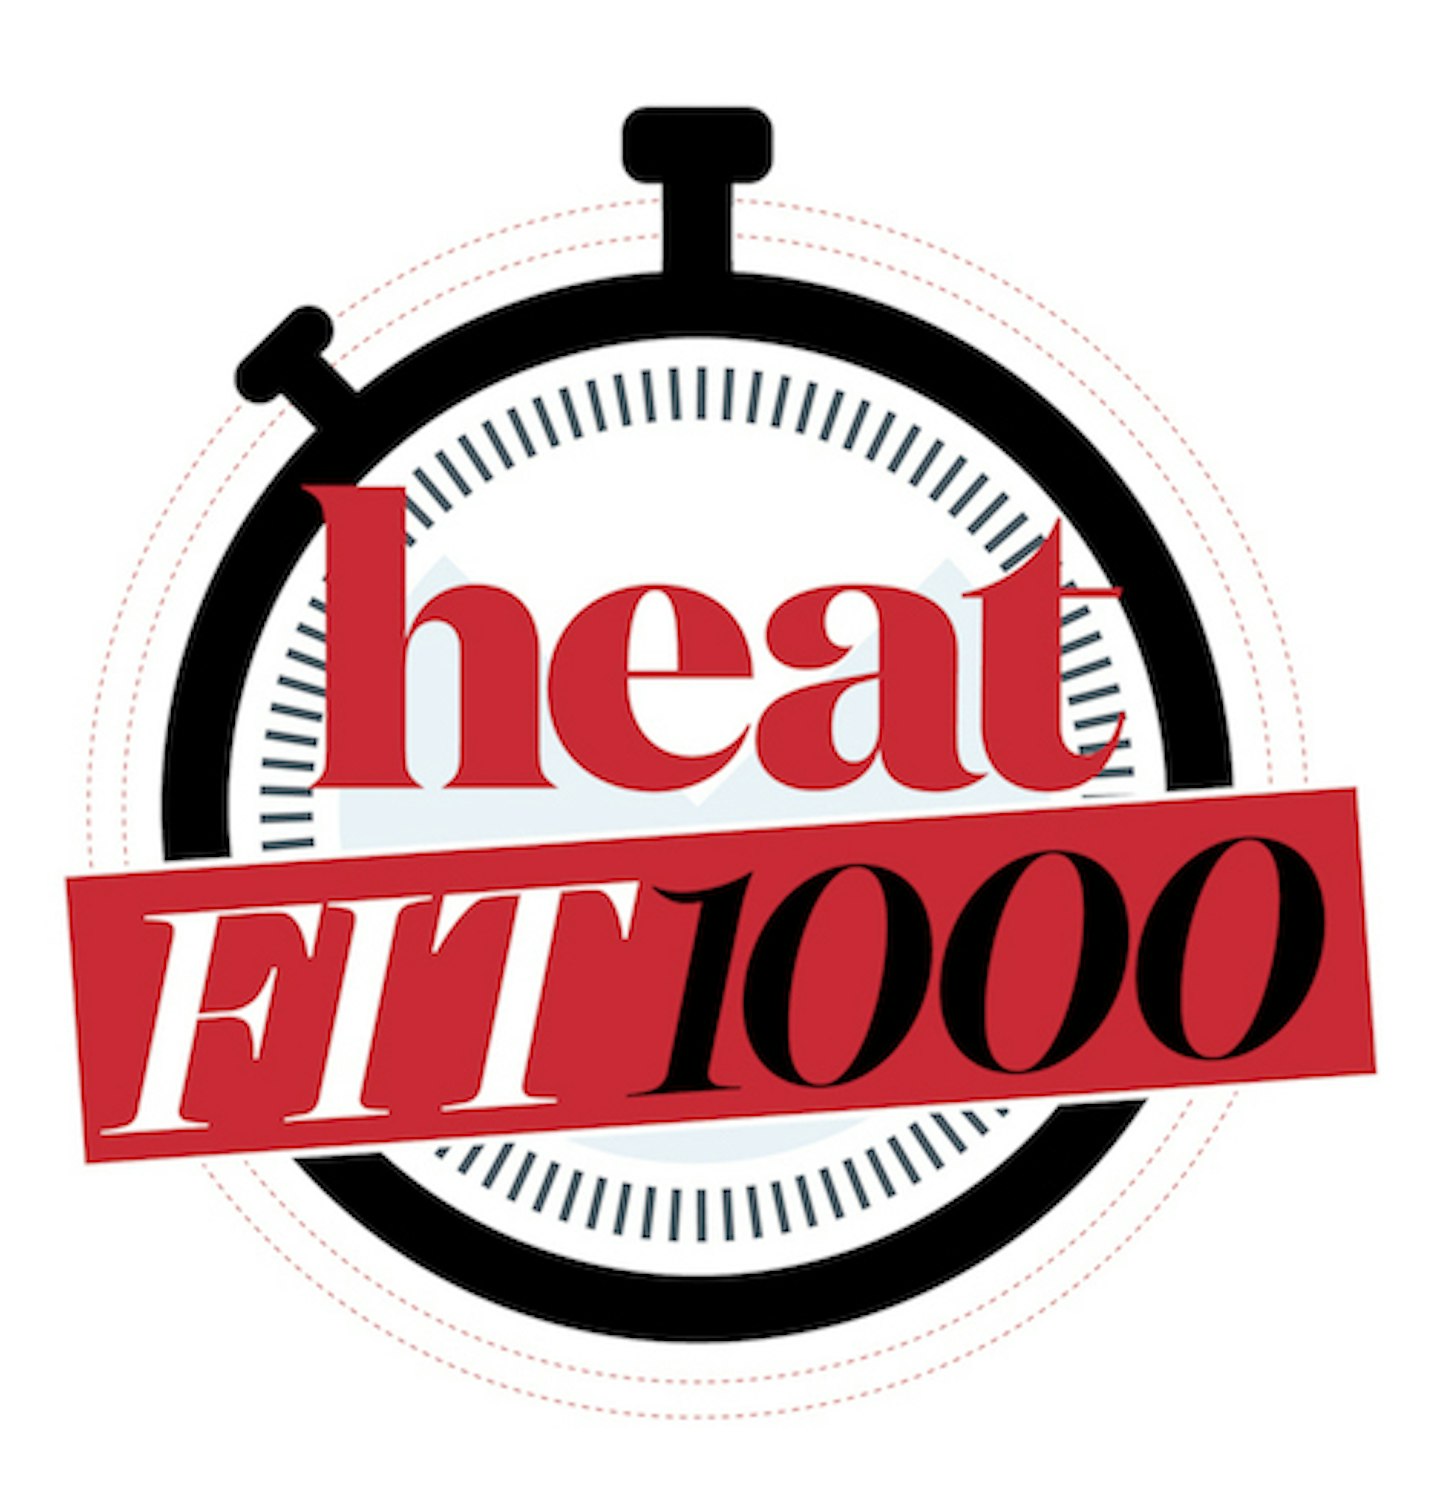 heat fit 1000